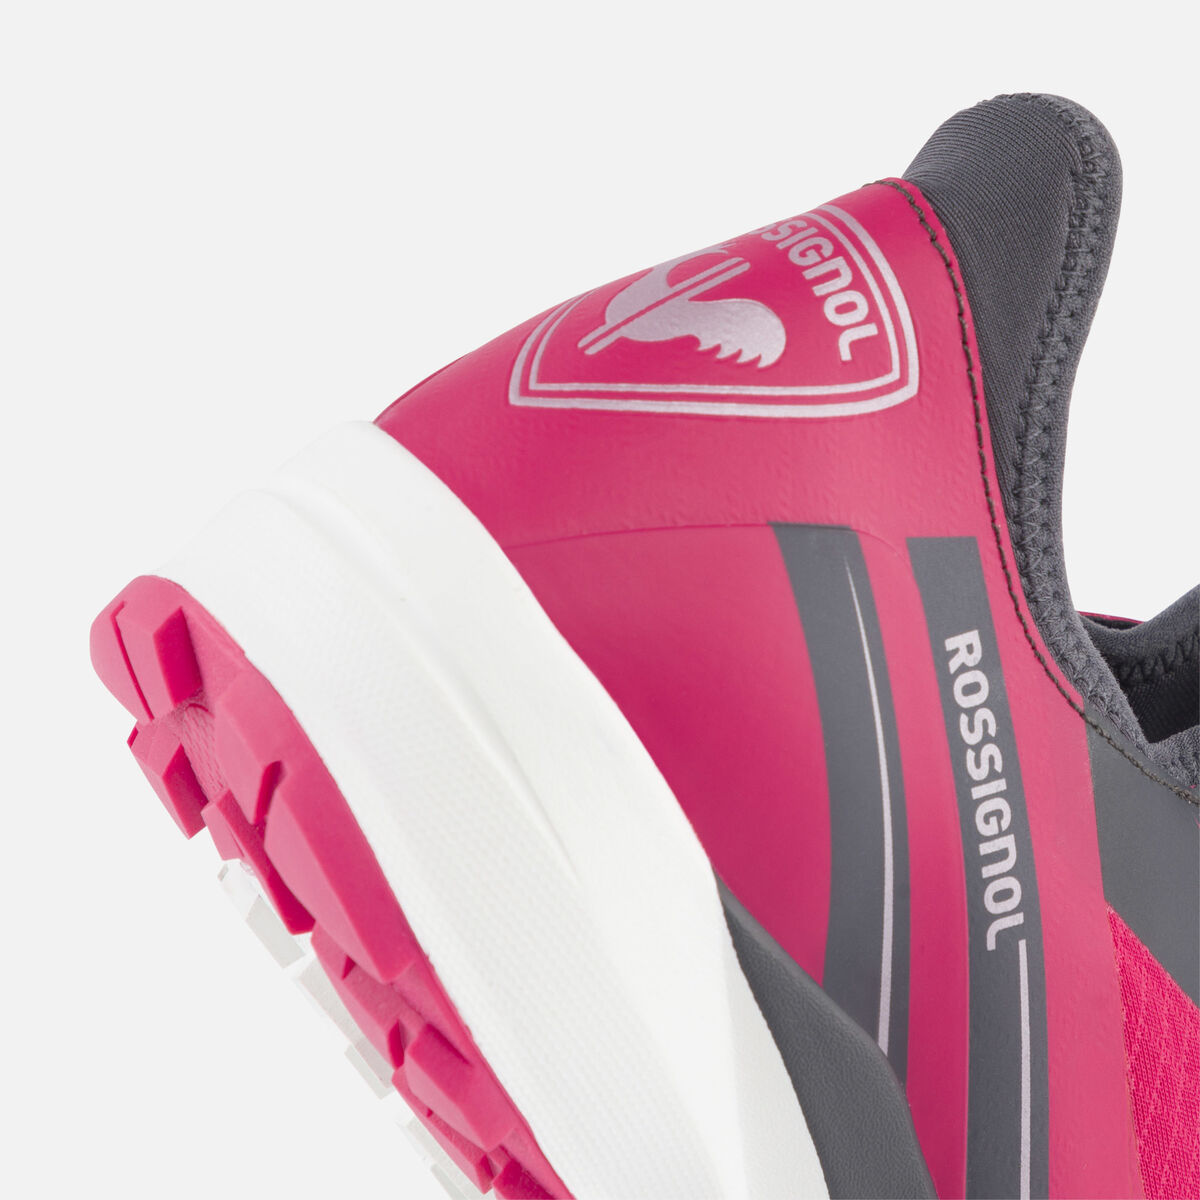 Rossignol Zapatillas impermeables Active outdoor de color rosa para mujer pinkpurple